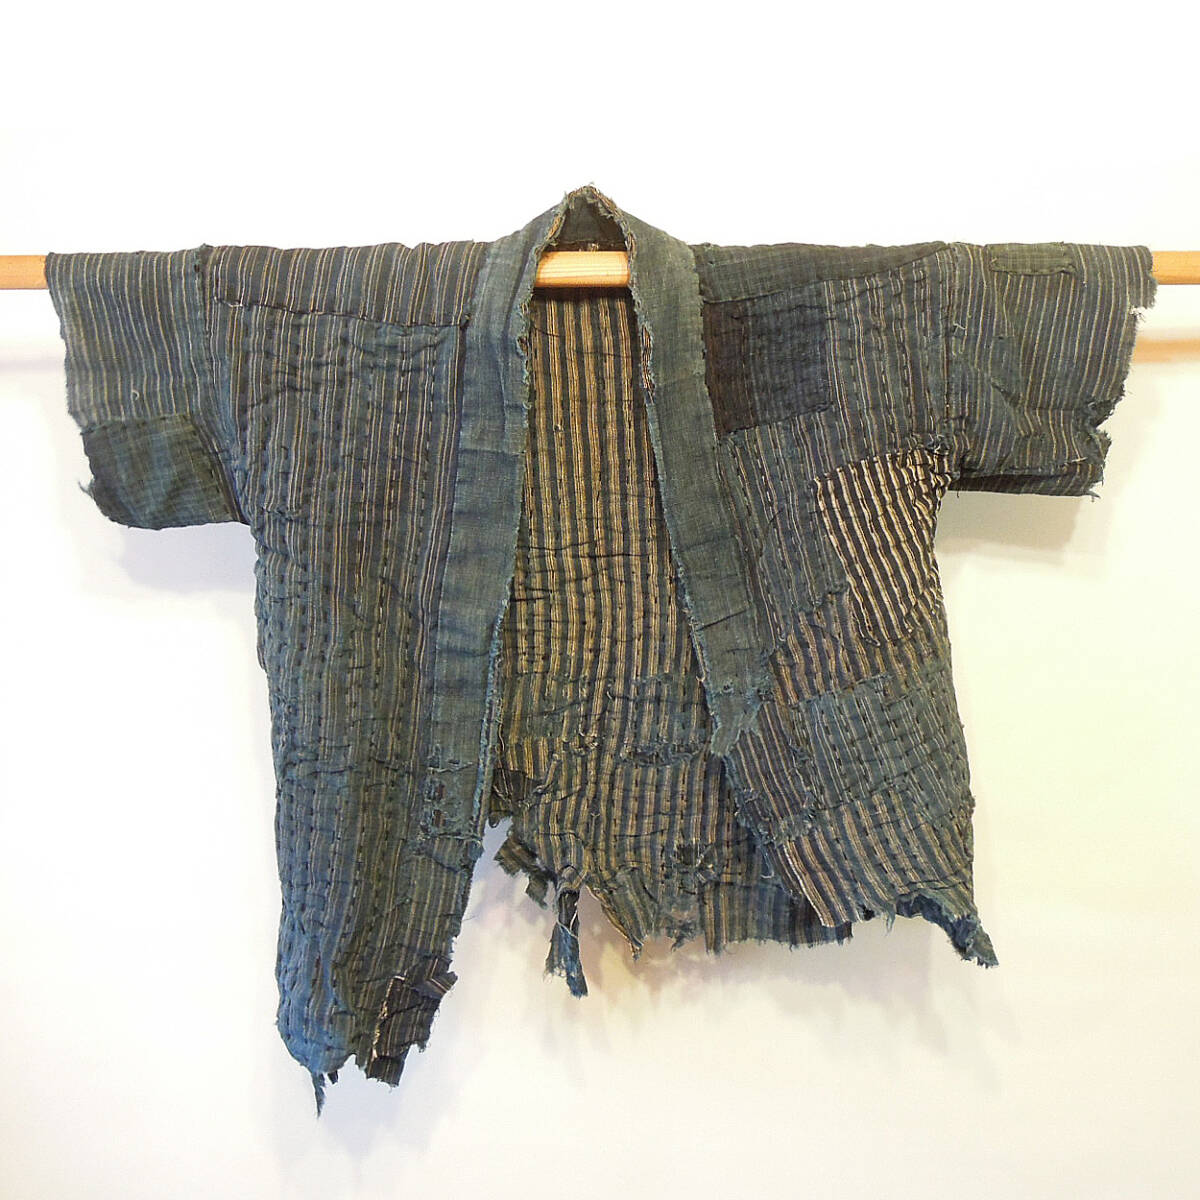 ボロ 野良着 アート 刺し子 継ぎ接ぎ 木綿 古布 古着 襤褸 vintage noragi boro art textile sashiko patchwork の画像3